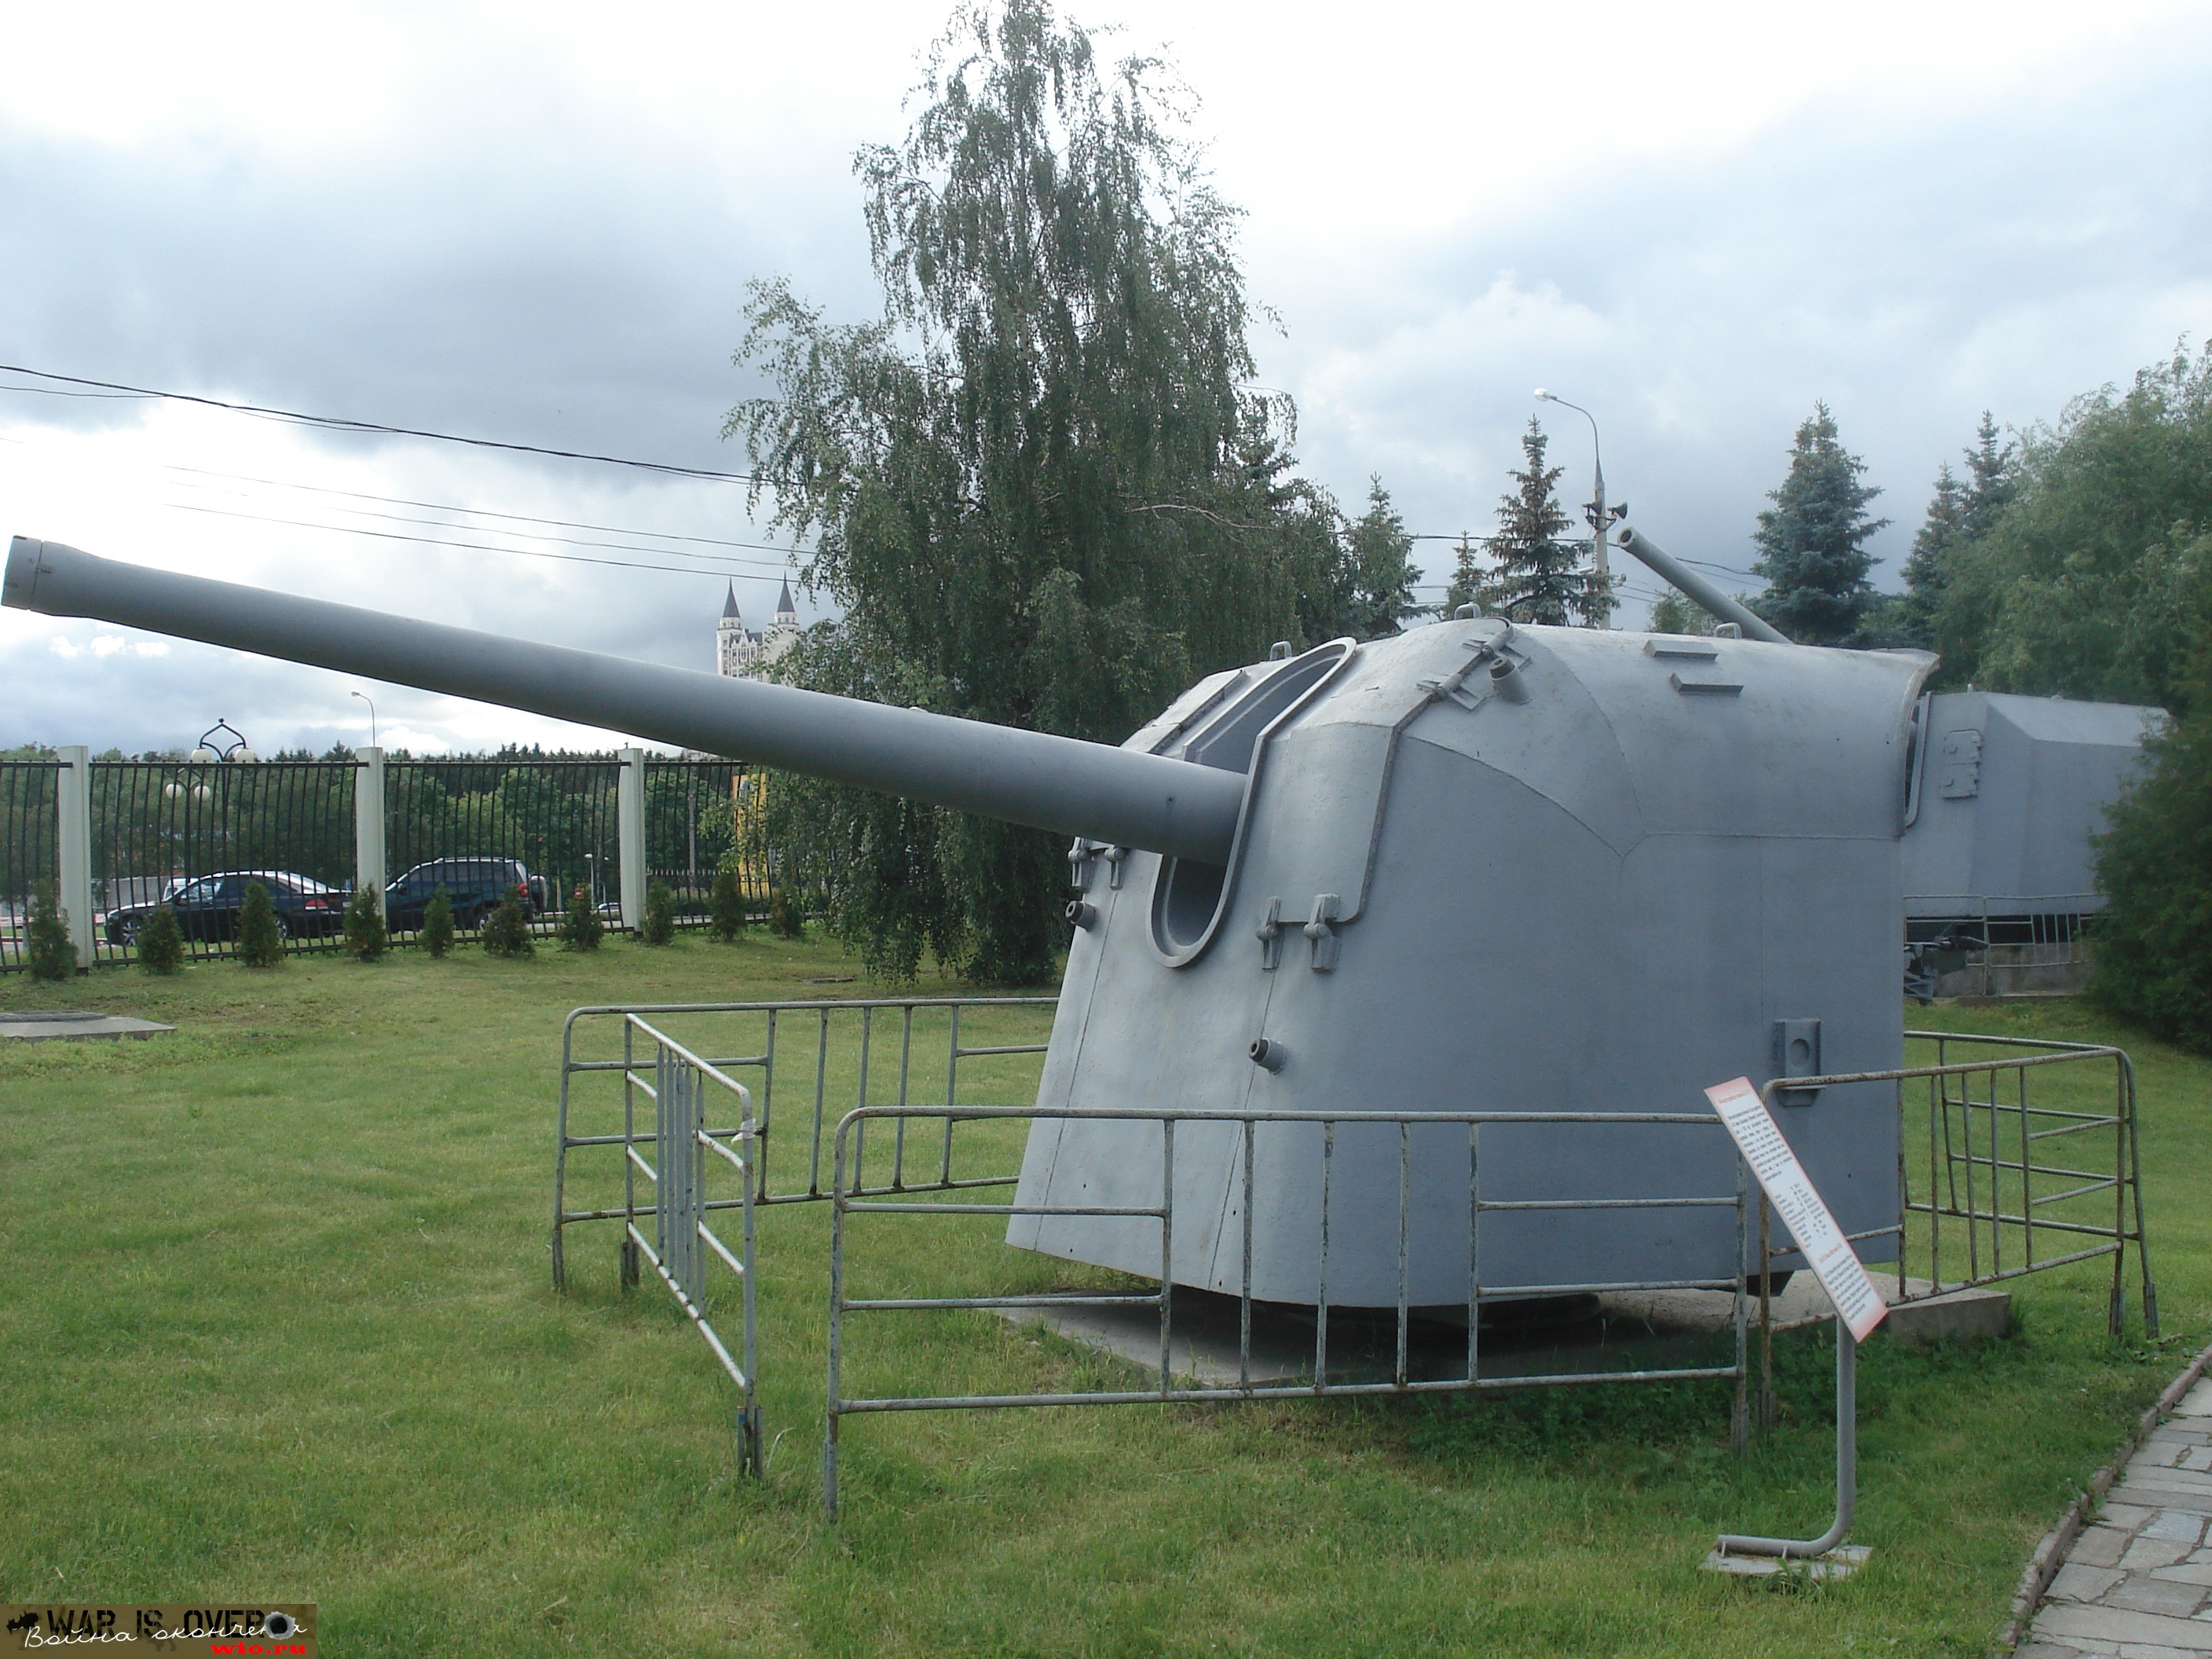 Sovietique tourelle 130mm canon naval B-13